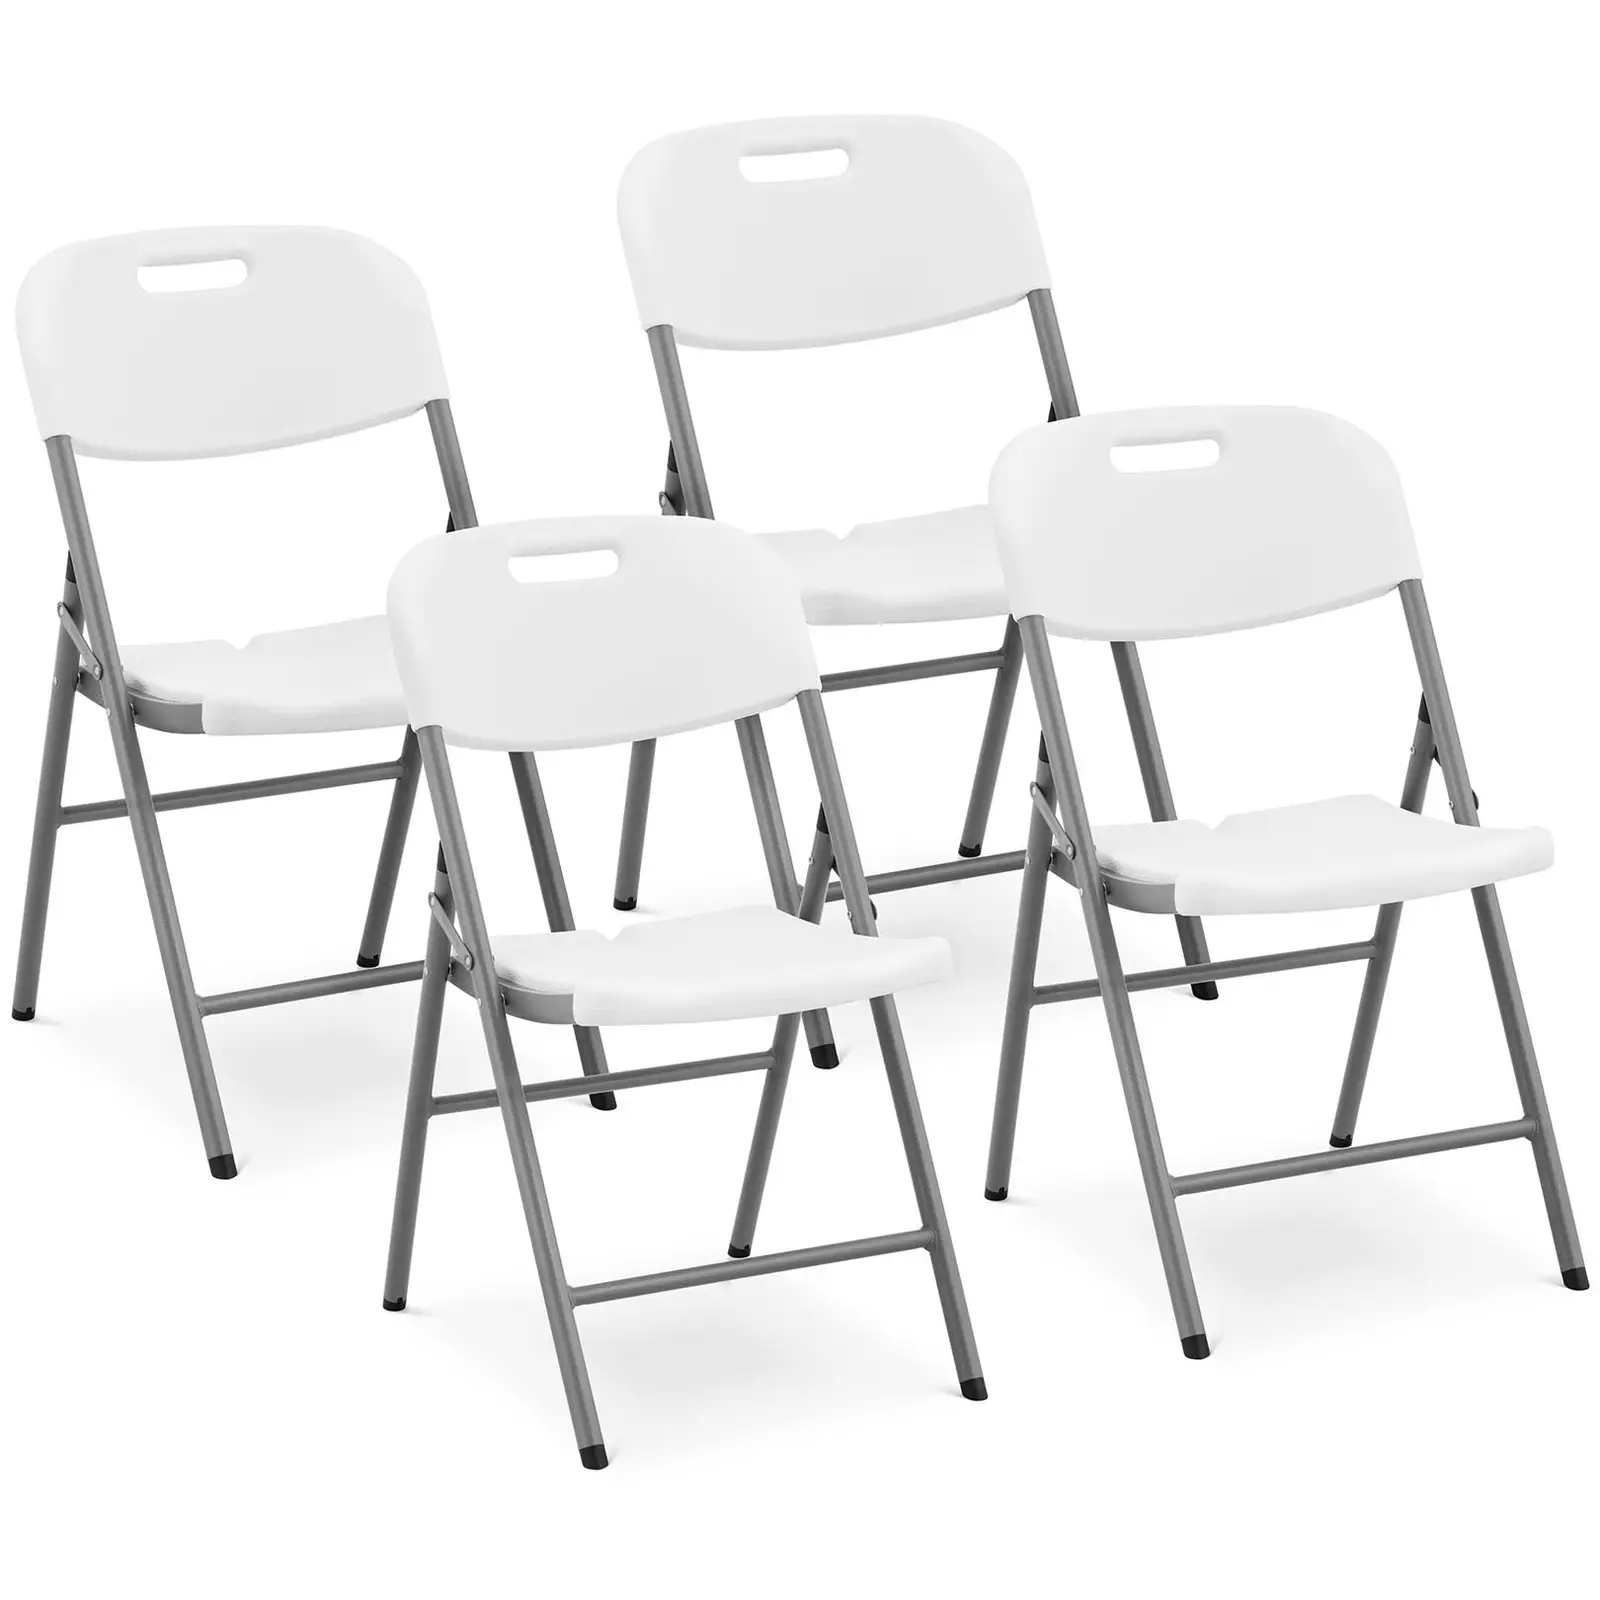 Сгъваеми столове - комплект от 4 броя - Royal Catering - 180 кг - площ за сядане: 40 x 38 см - бели